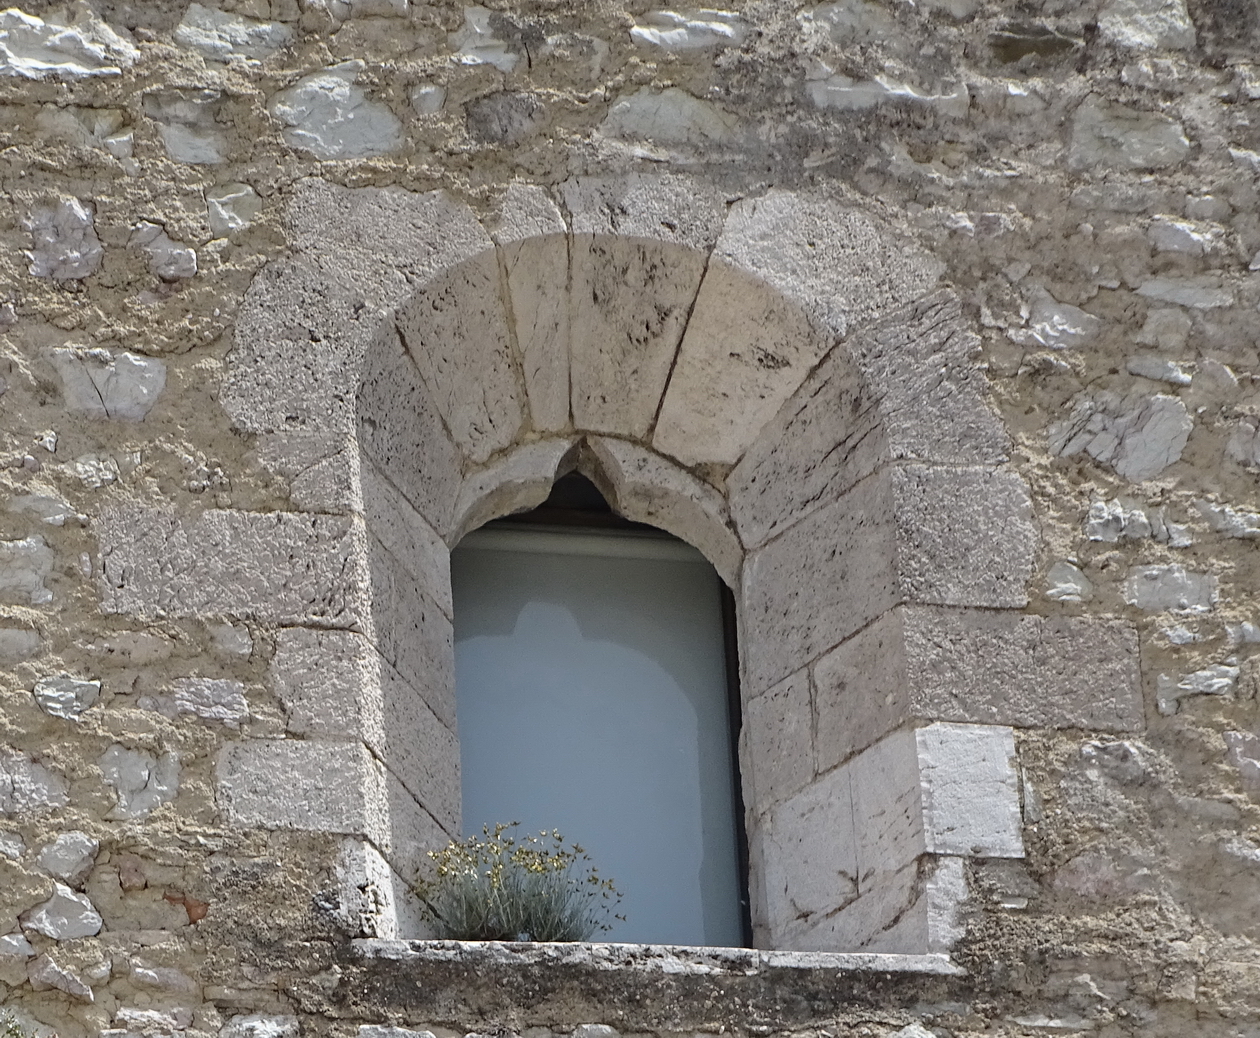 finestra, monofora - ambito Italia centrale (sec. XIV)